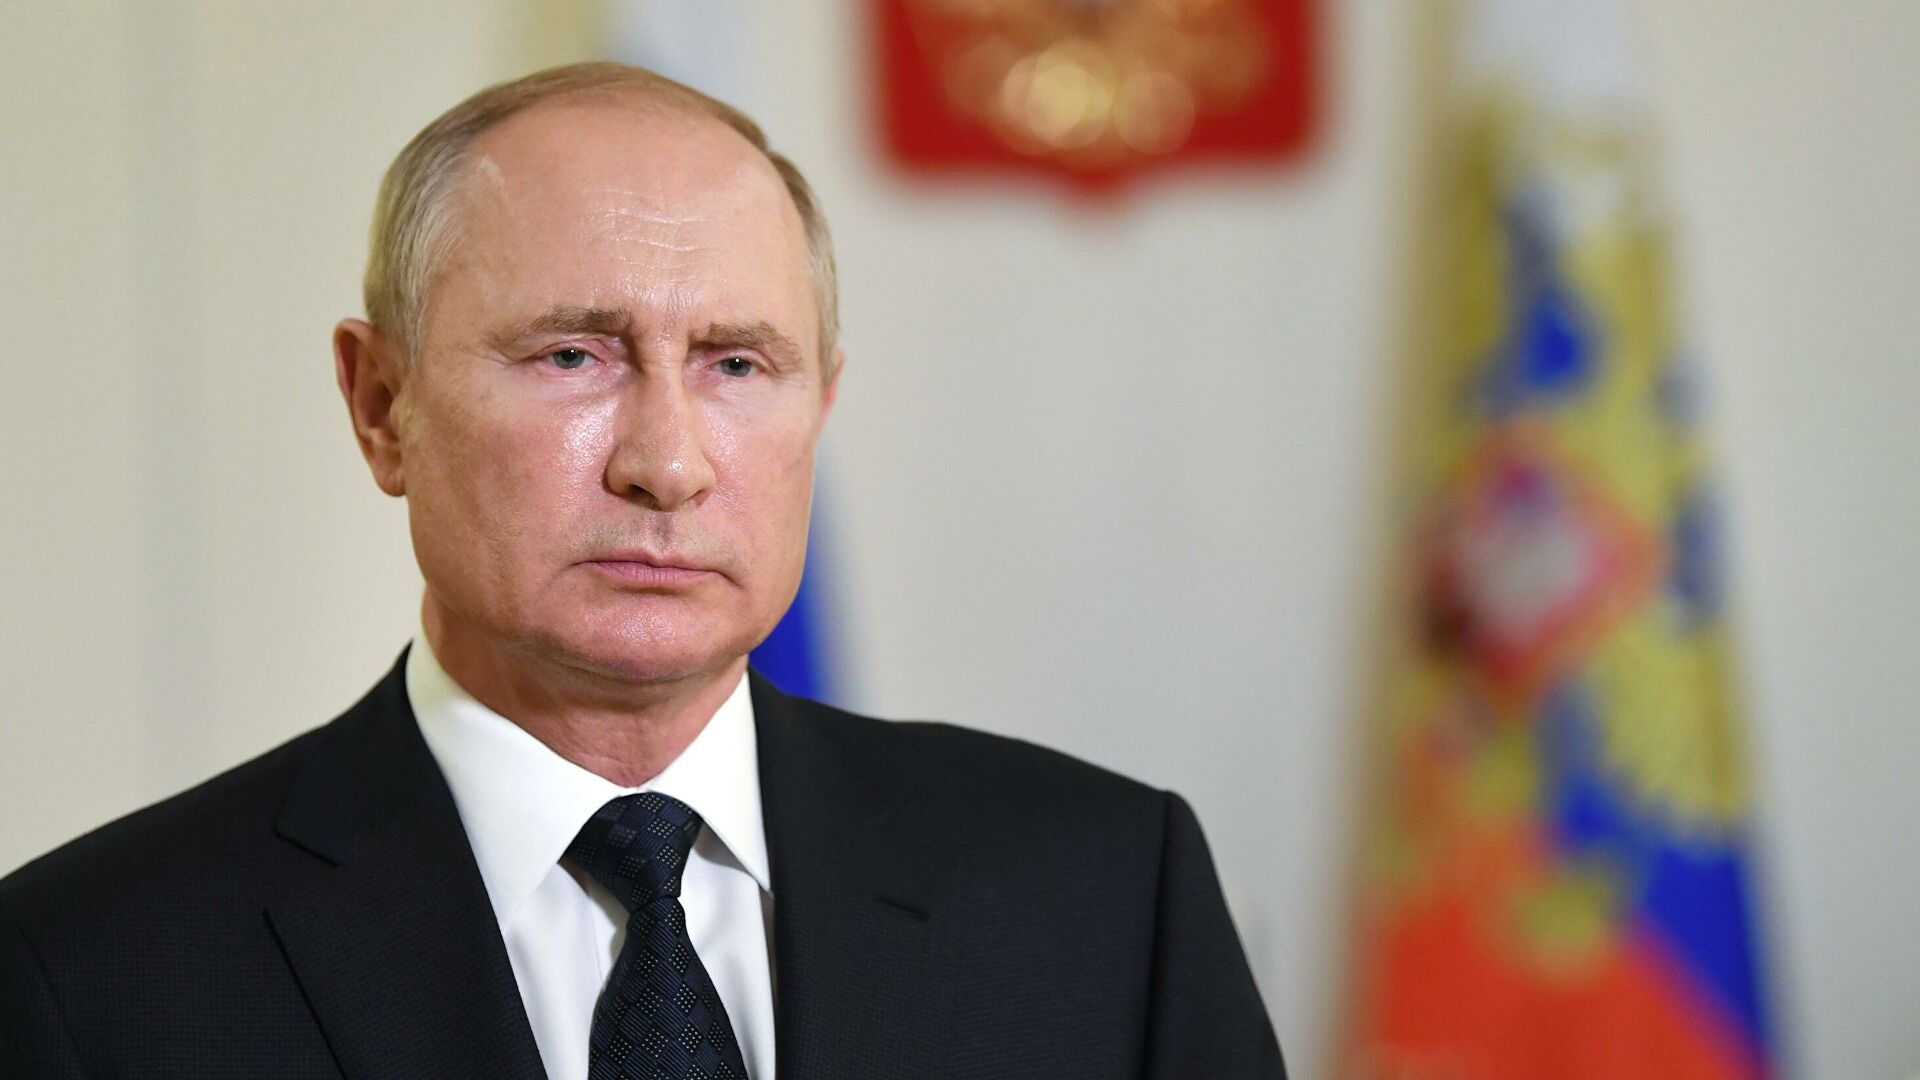 Путин: «Все российские вакцины от коронавируса эффективны»